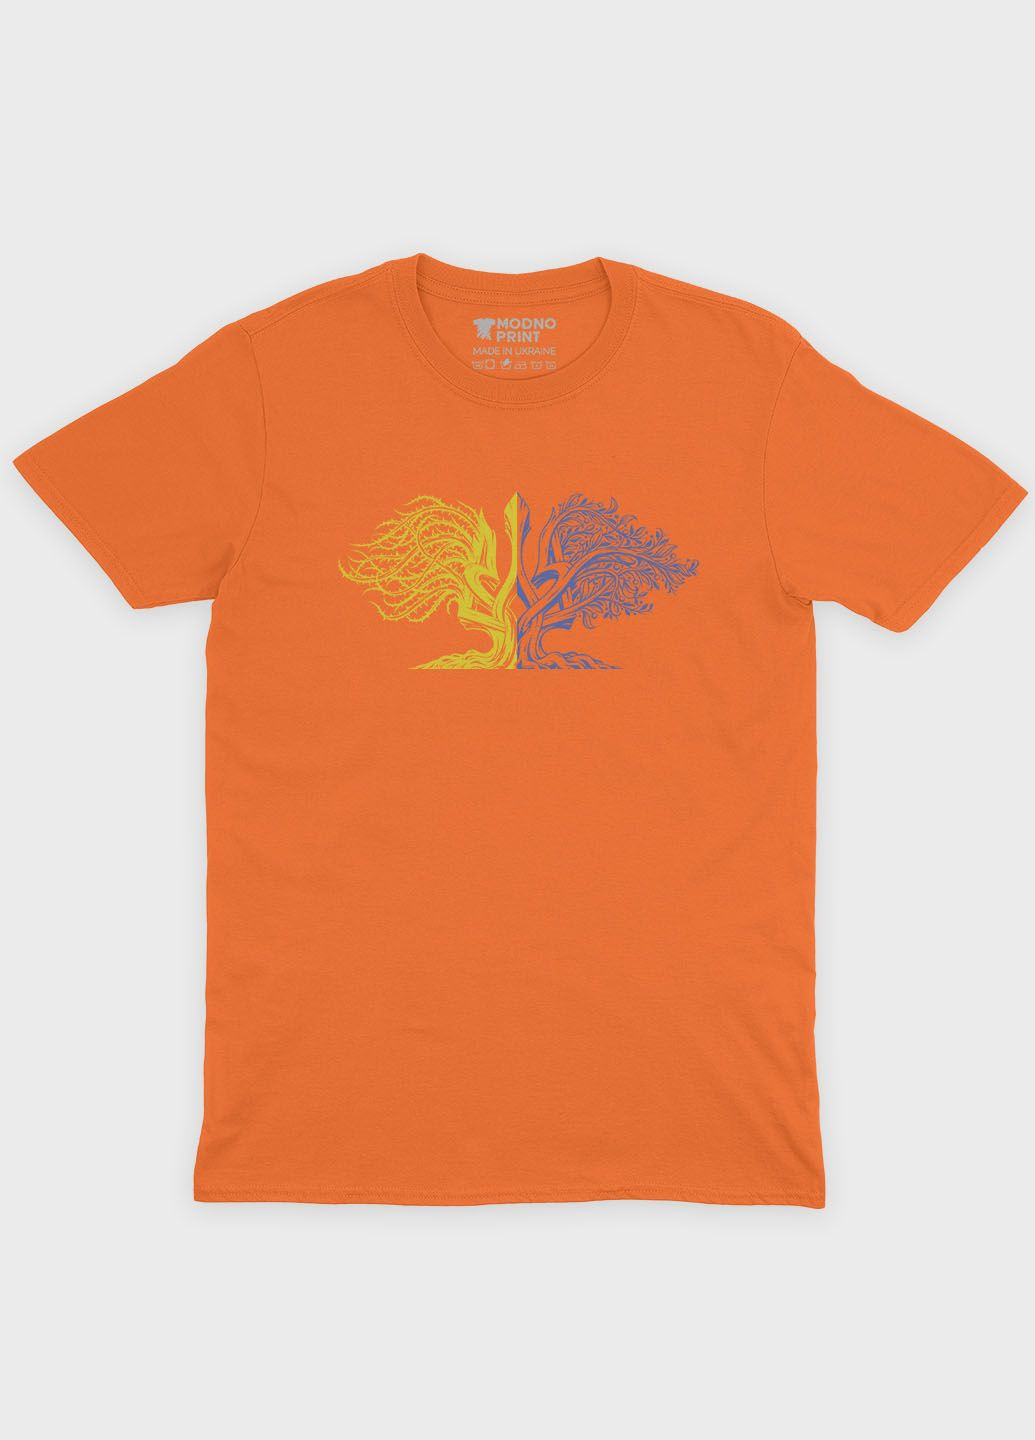 Оранжевая демисезонная футболка для мальчика с патриотическим принтом гербтризуб (ts001-1-ora-005-1-026-b) Modno